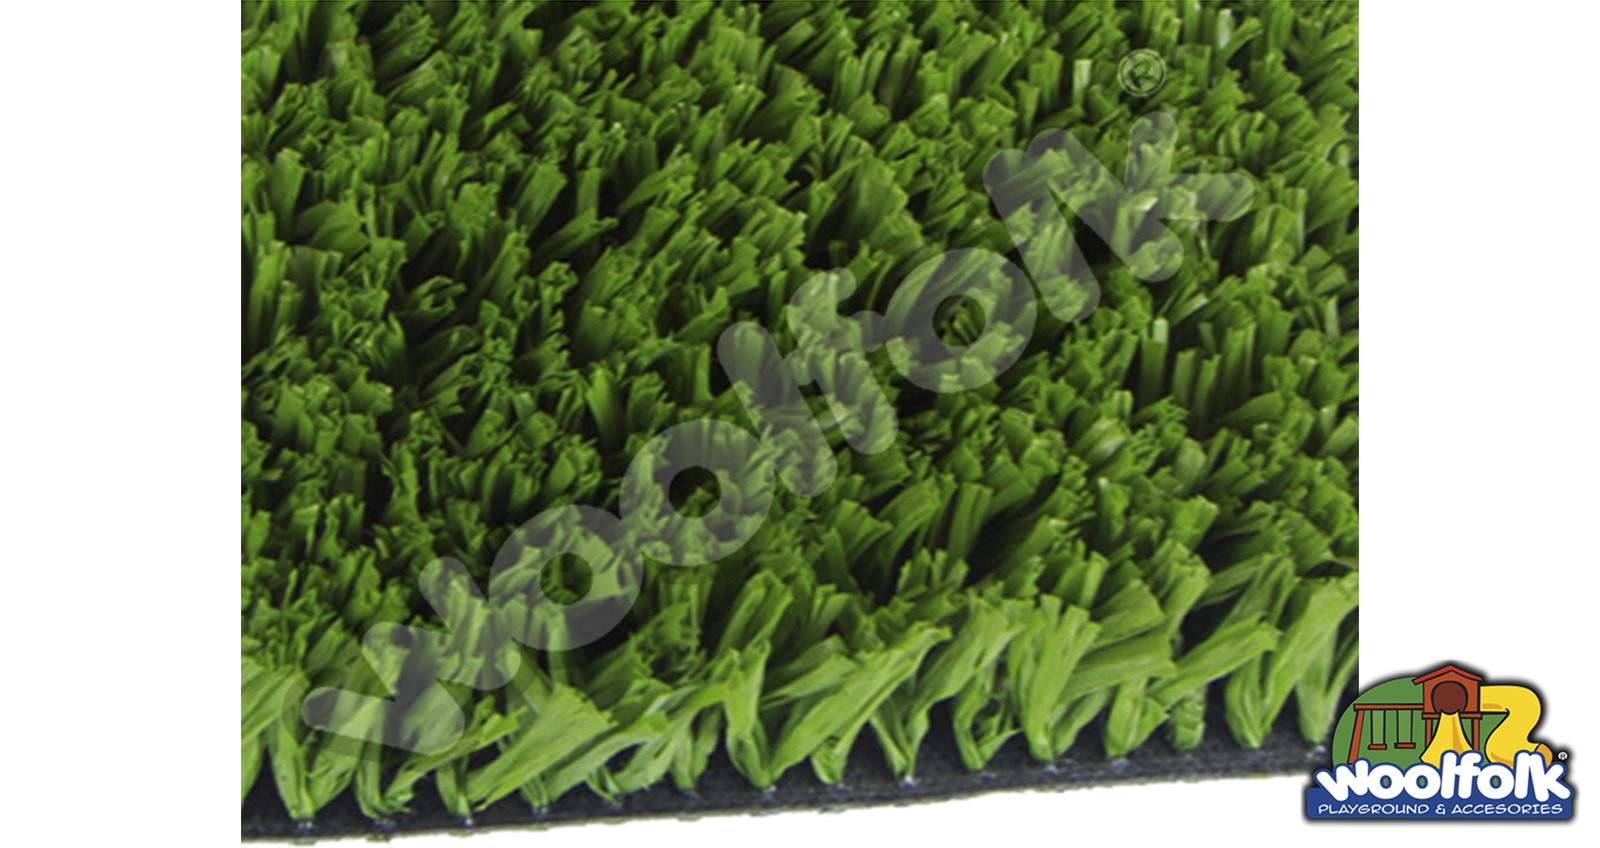 Pasto Artificial Deportivo woolfolk
Cubierta inferior (Backing): Poliuretano distribuido uniformemente entre las cerdas. Modelo: pam001